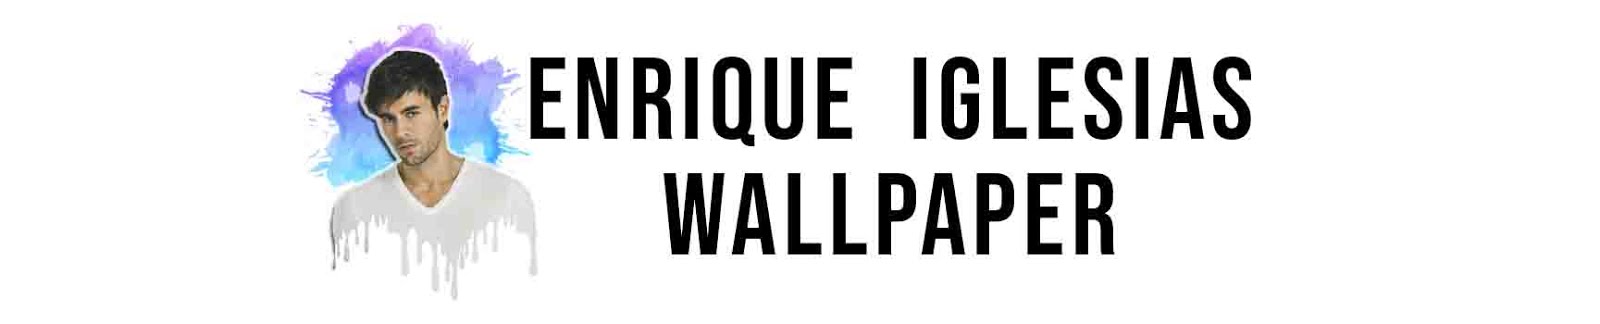 Enrique Iglesias Wallpaper